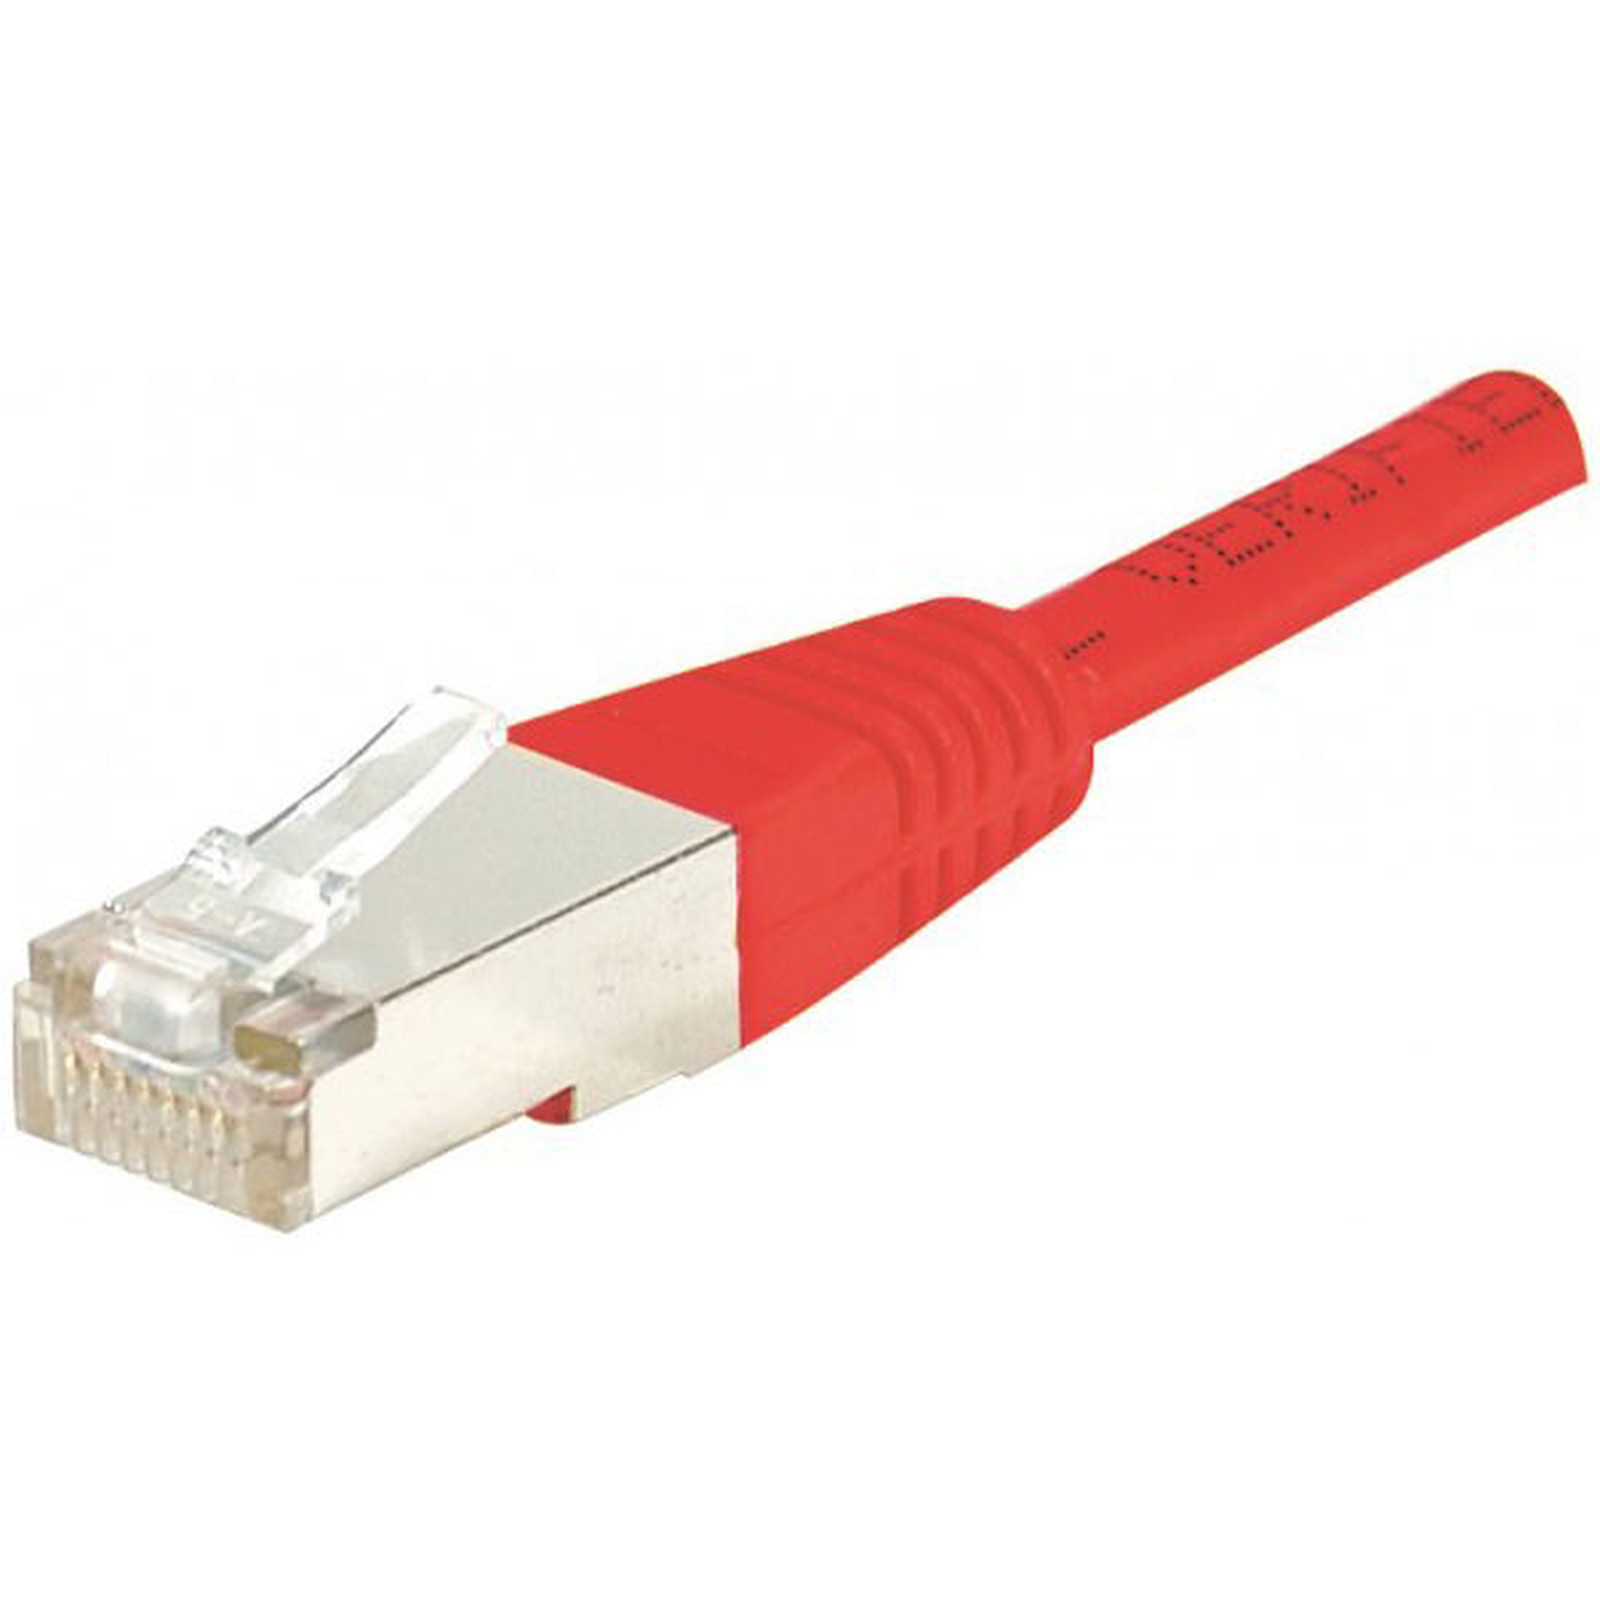 Cable RJ45 categorie 5e F/UTP 0,15 m (Rouge) - Cable RJ45 Generique